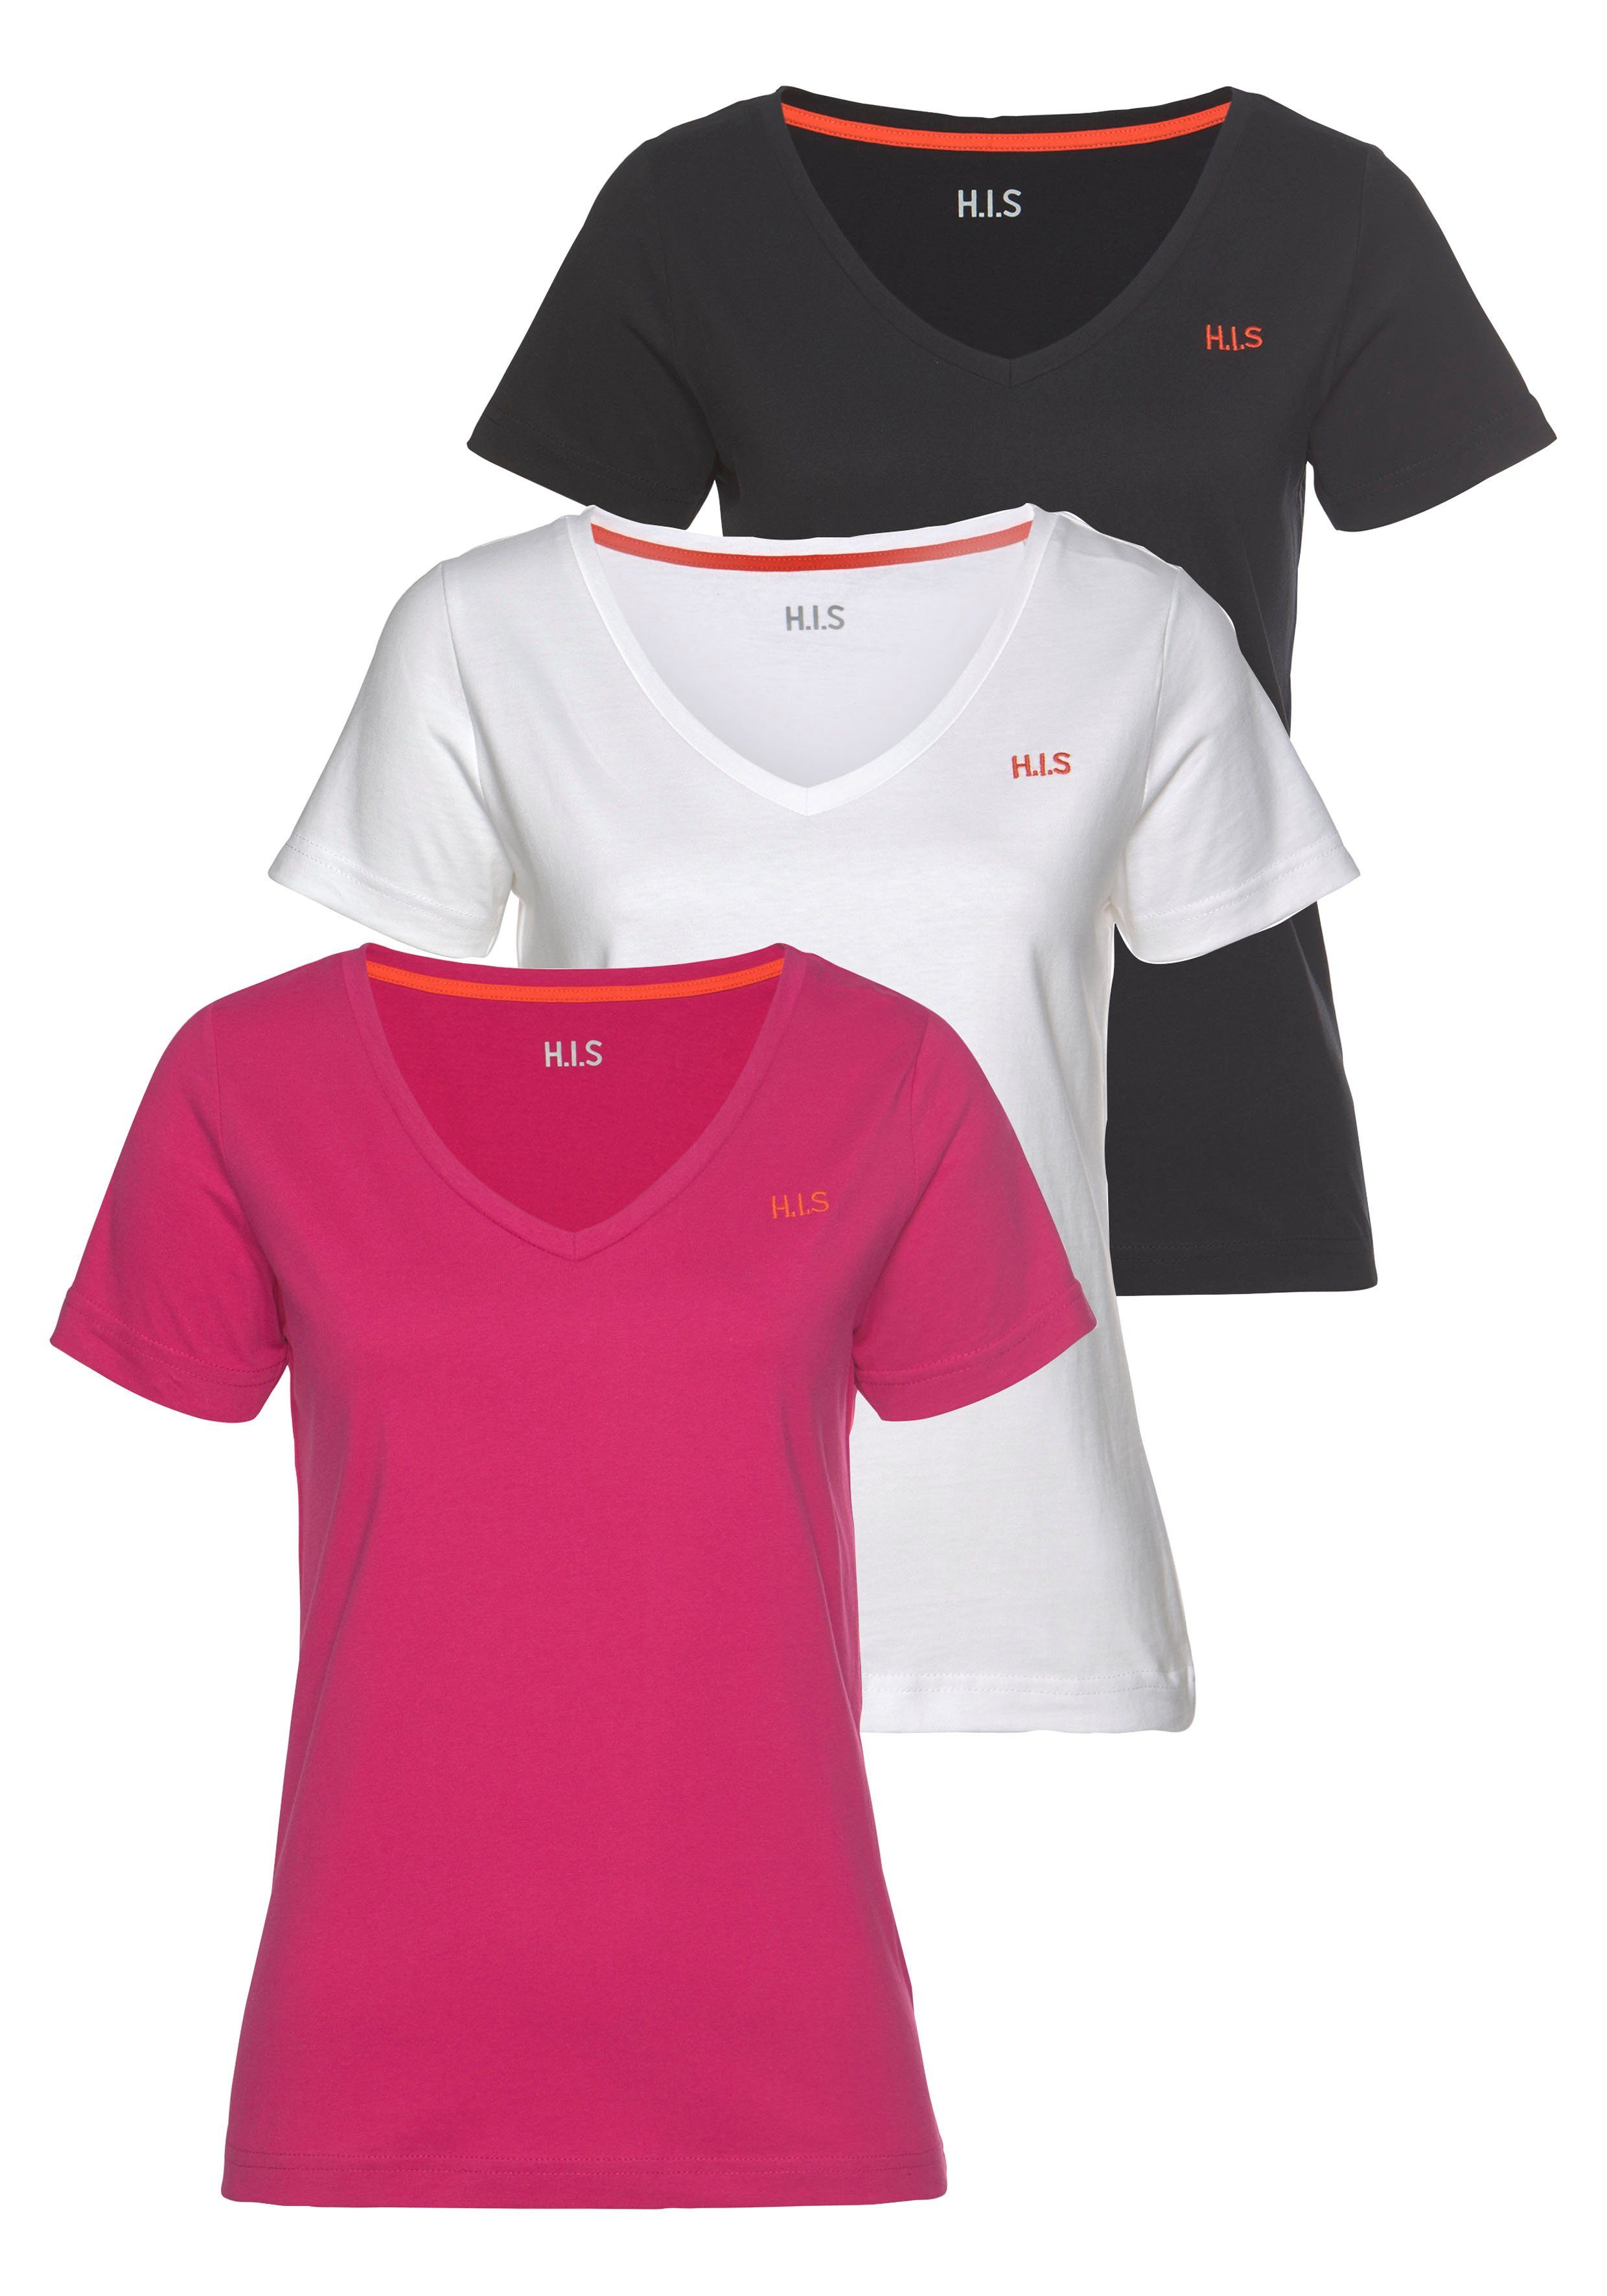 Damen-Shirts online kaufen » Oberteile | OTTO